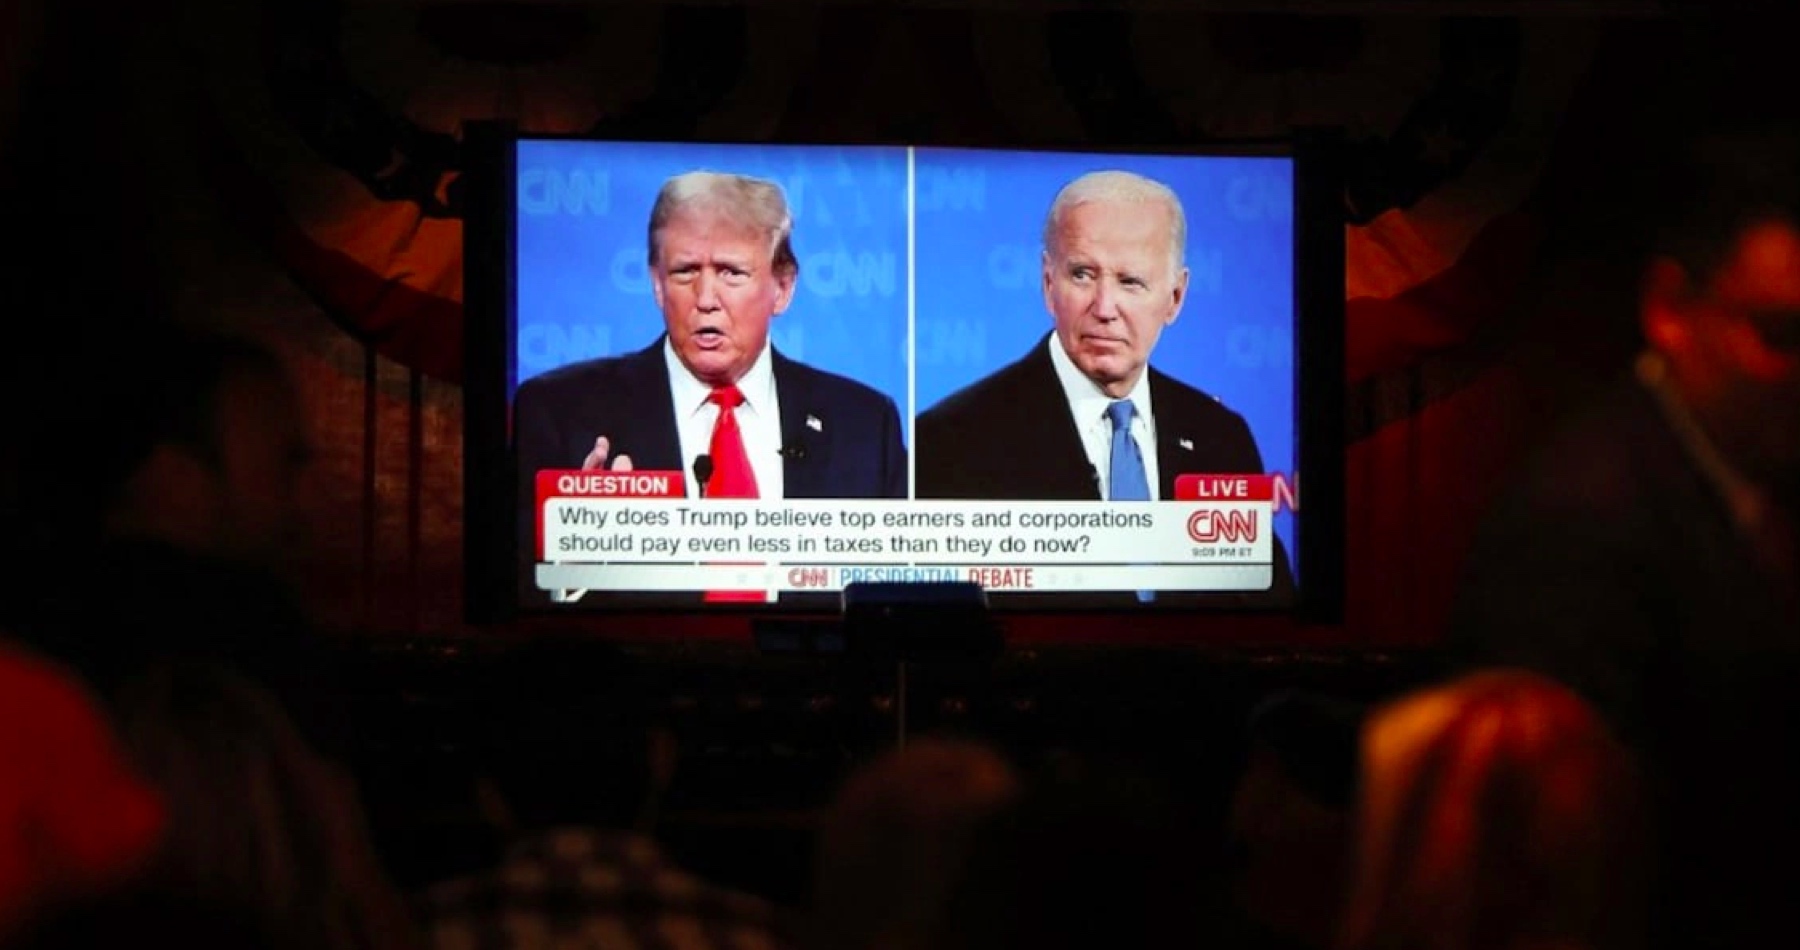 VIDEO: Donald Trump a Joe Biden sa stretli v prvej televíznej debate pred novembrovými prezidentskými voľbami.